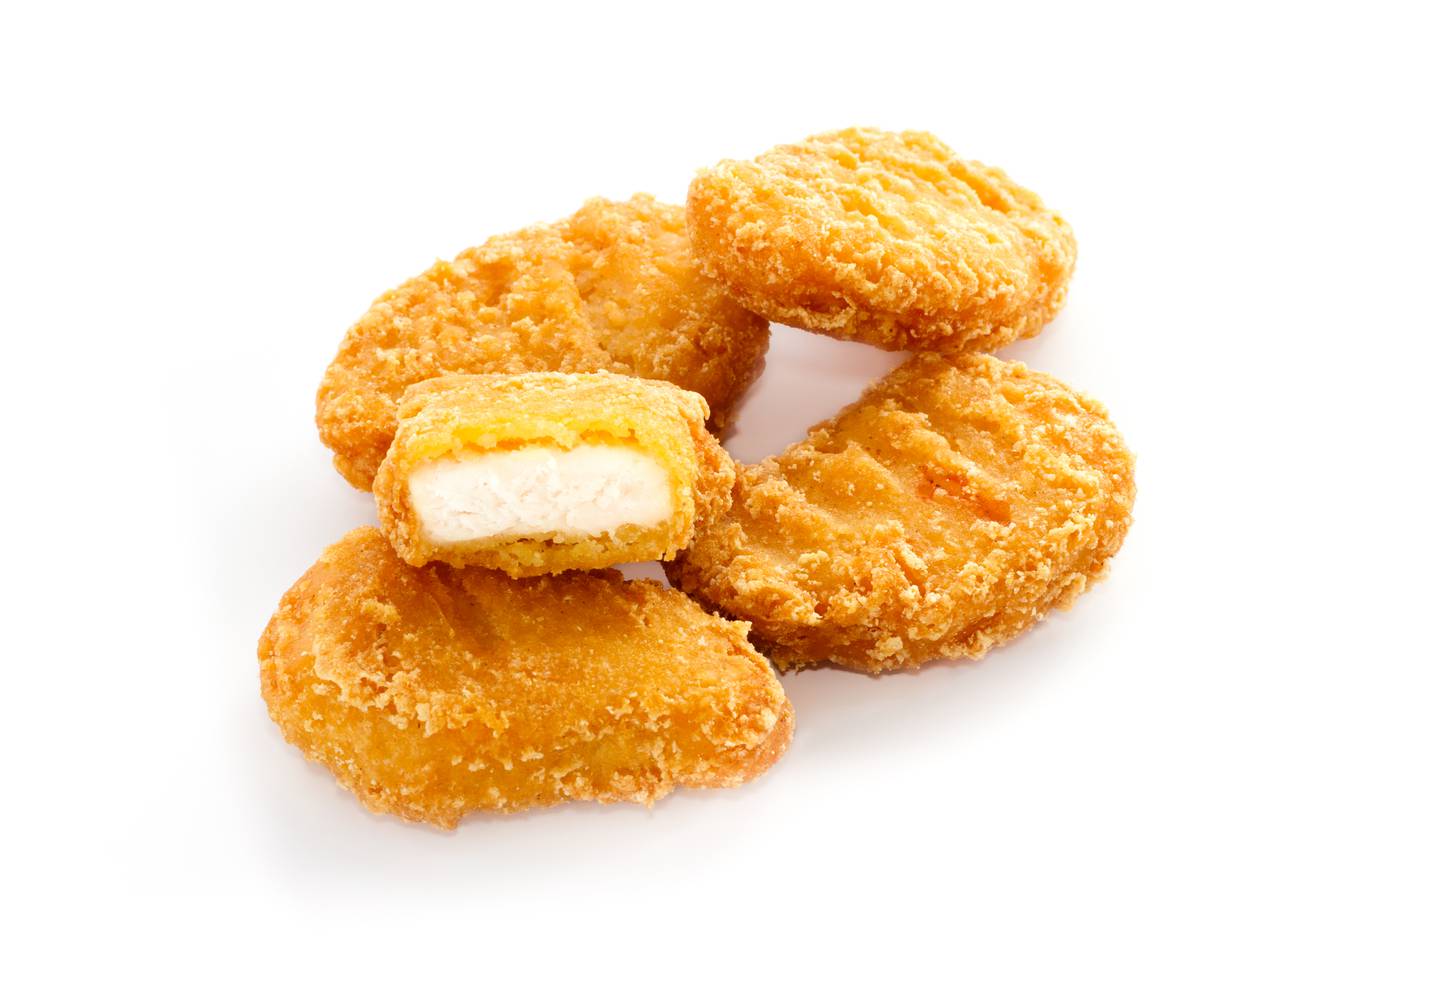 Los nuggets congelados analizados no alcanzaron 2/3 partes de carne de pollo.